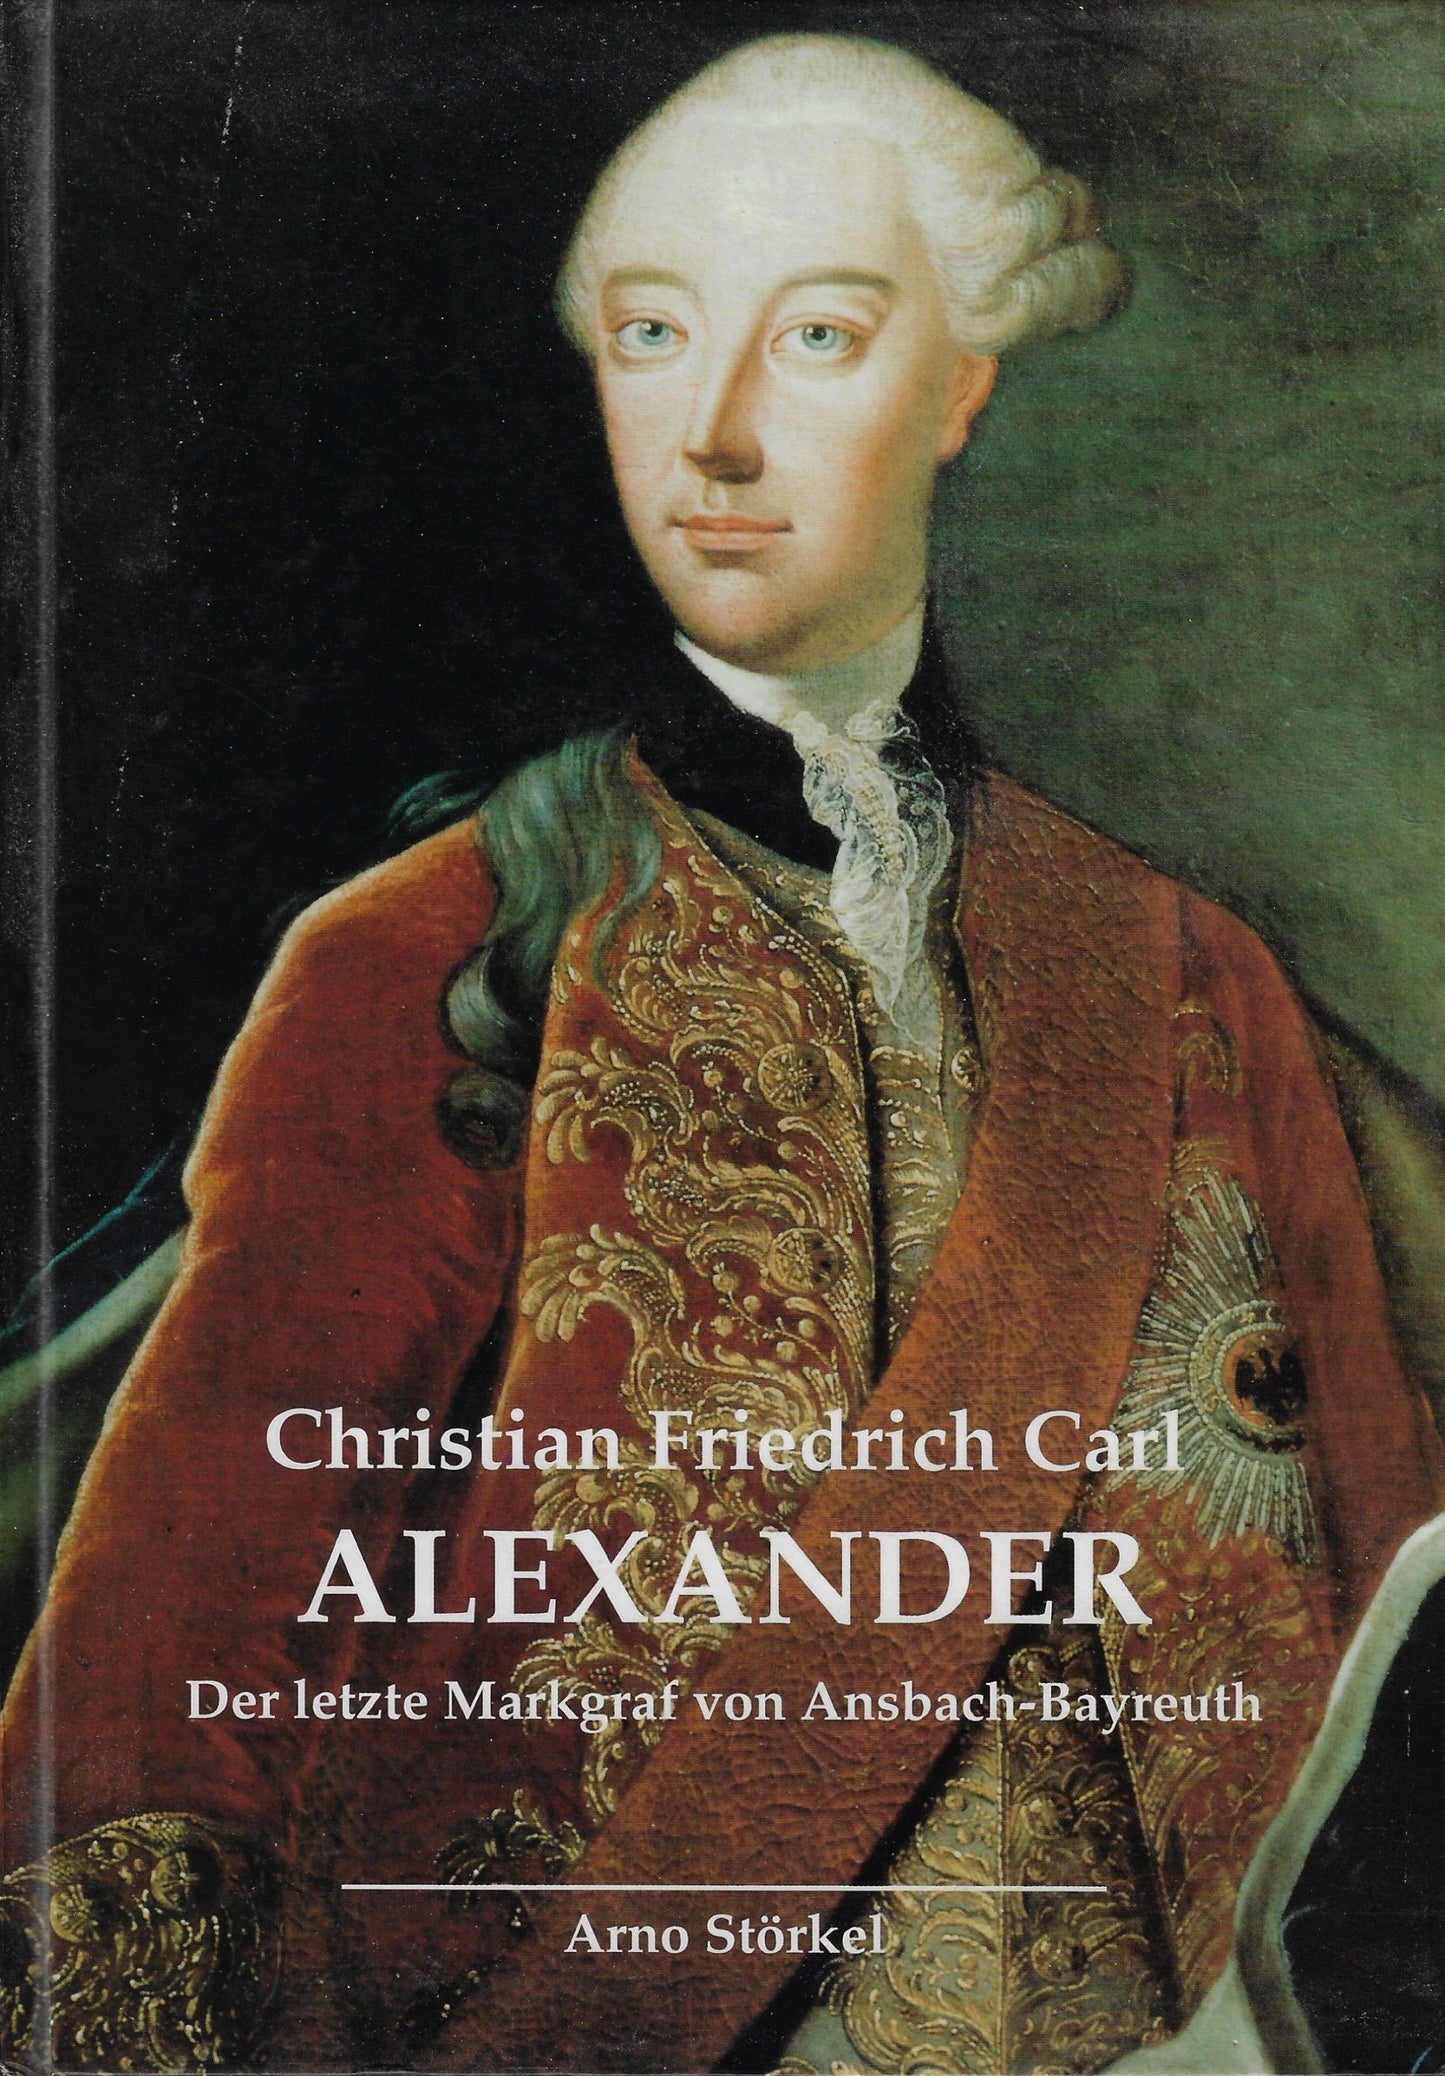 Christian Friedrich Carl Alexander